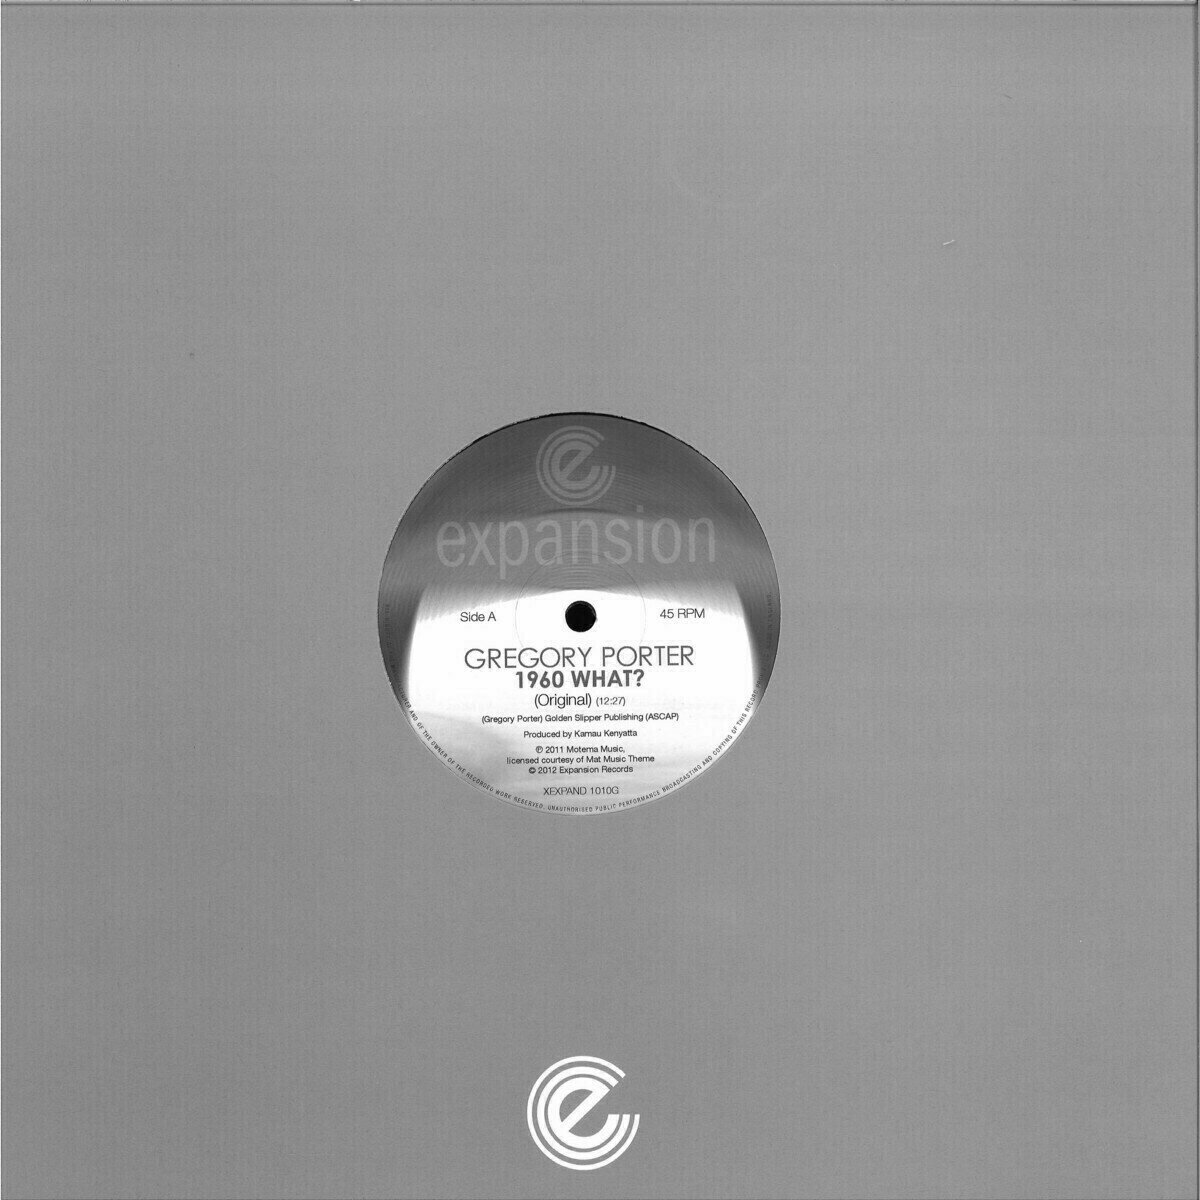 LP plošča Gregory Porter - 1960 What? (Original Mix) (12" Vinyl)